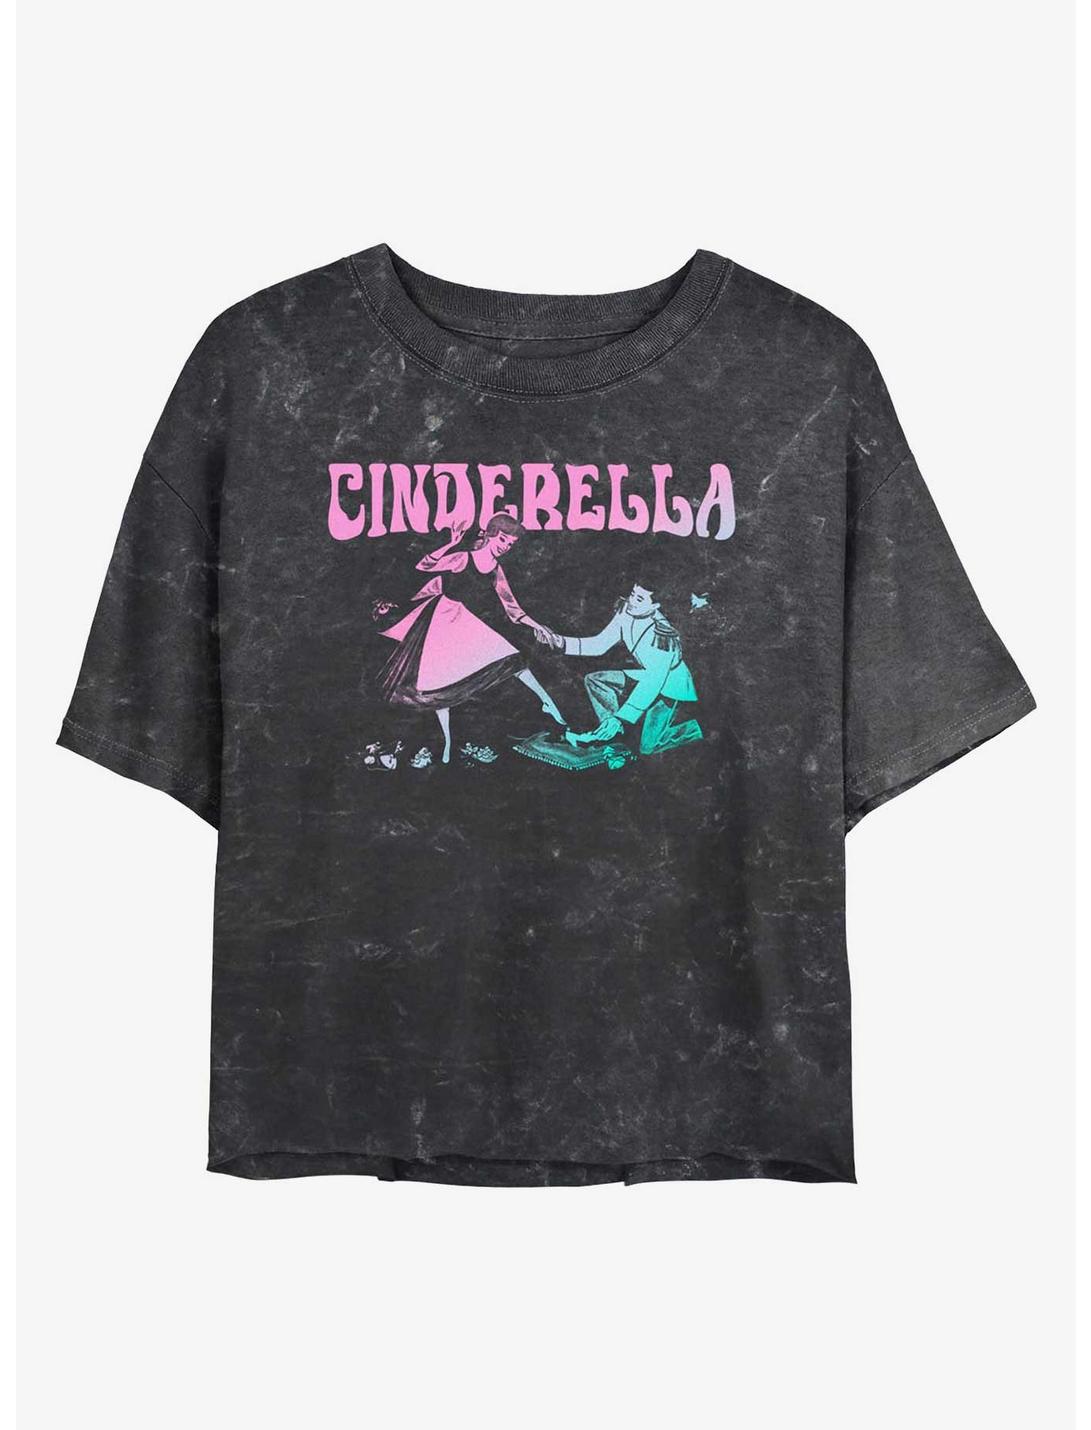 Disney Cinderella The Slipper Fits Mineral Wash Womens Crop T-Shirt, BLACK, hi-res